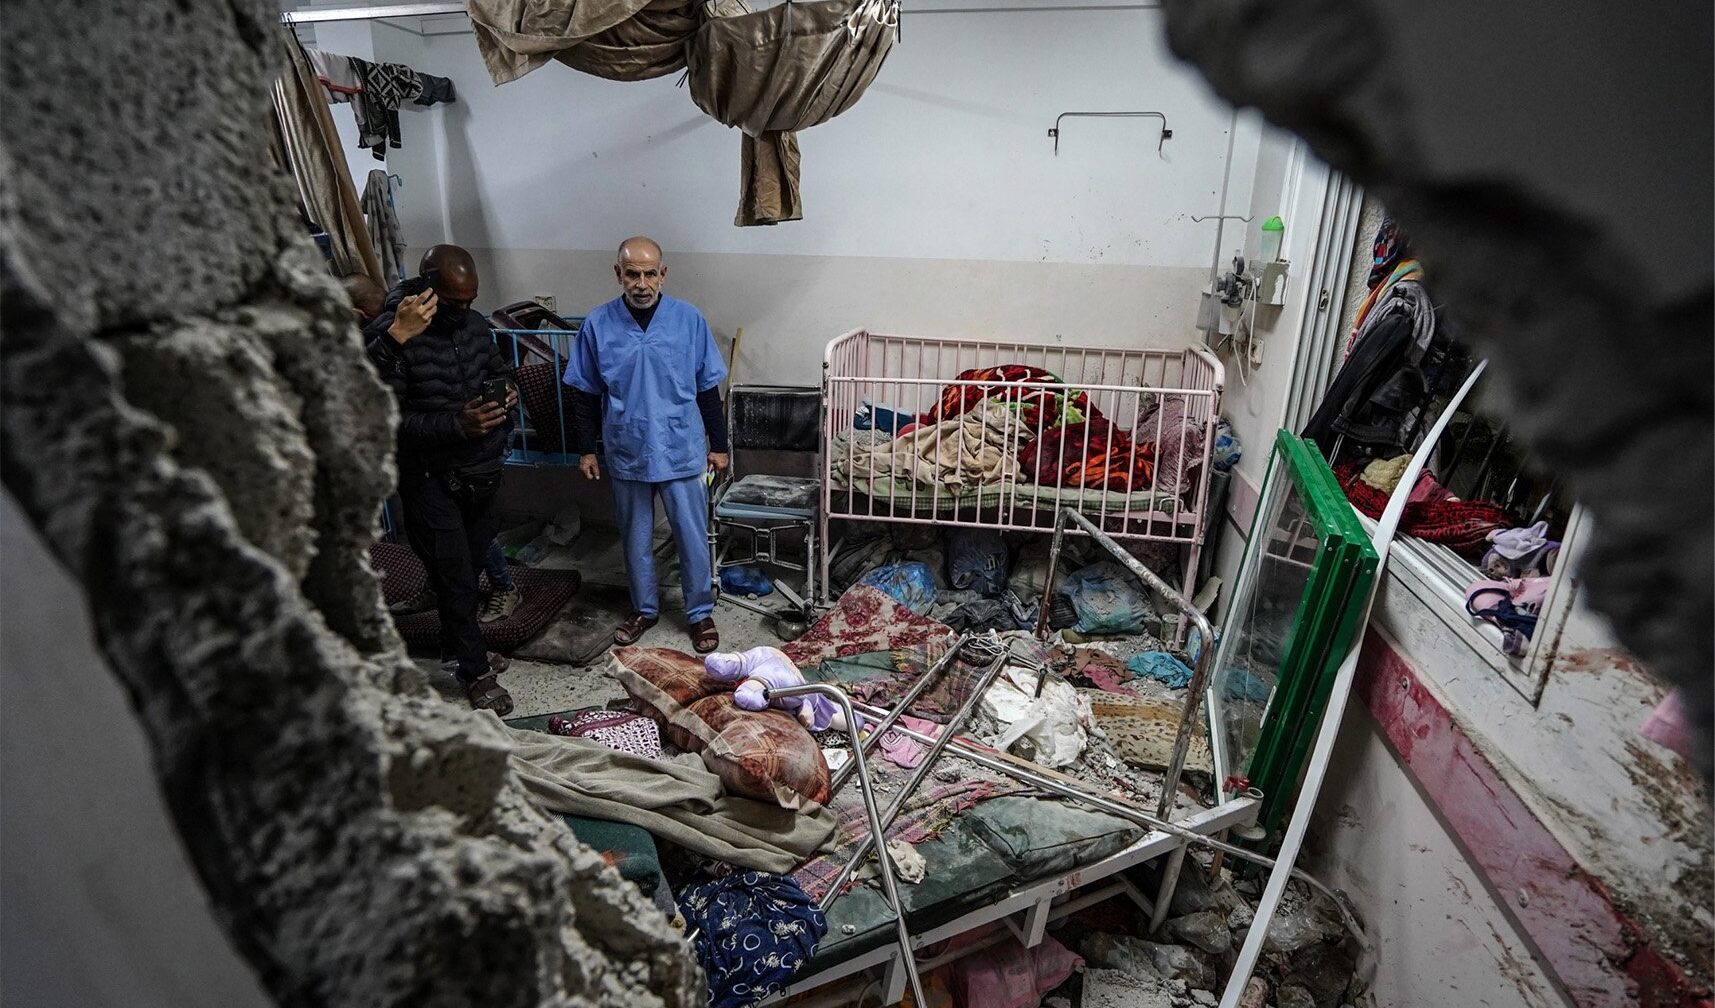 Guerra di Gaza, la denuncia di Msf: "Impossibile evacuare il Nasser Hospital"